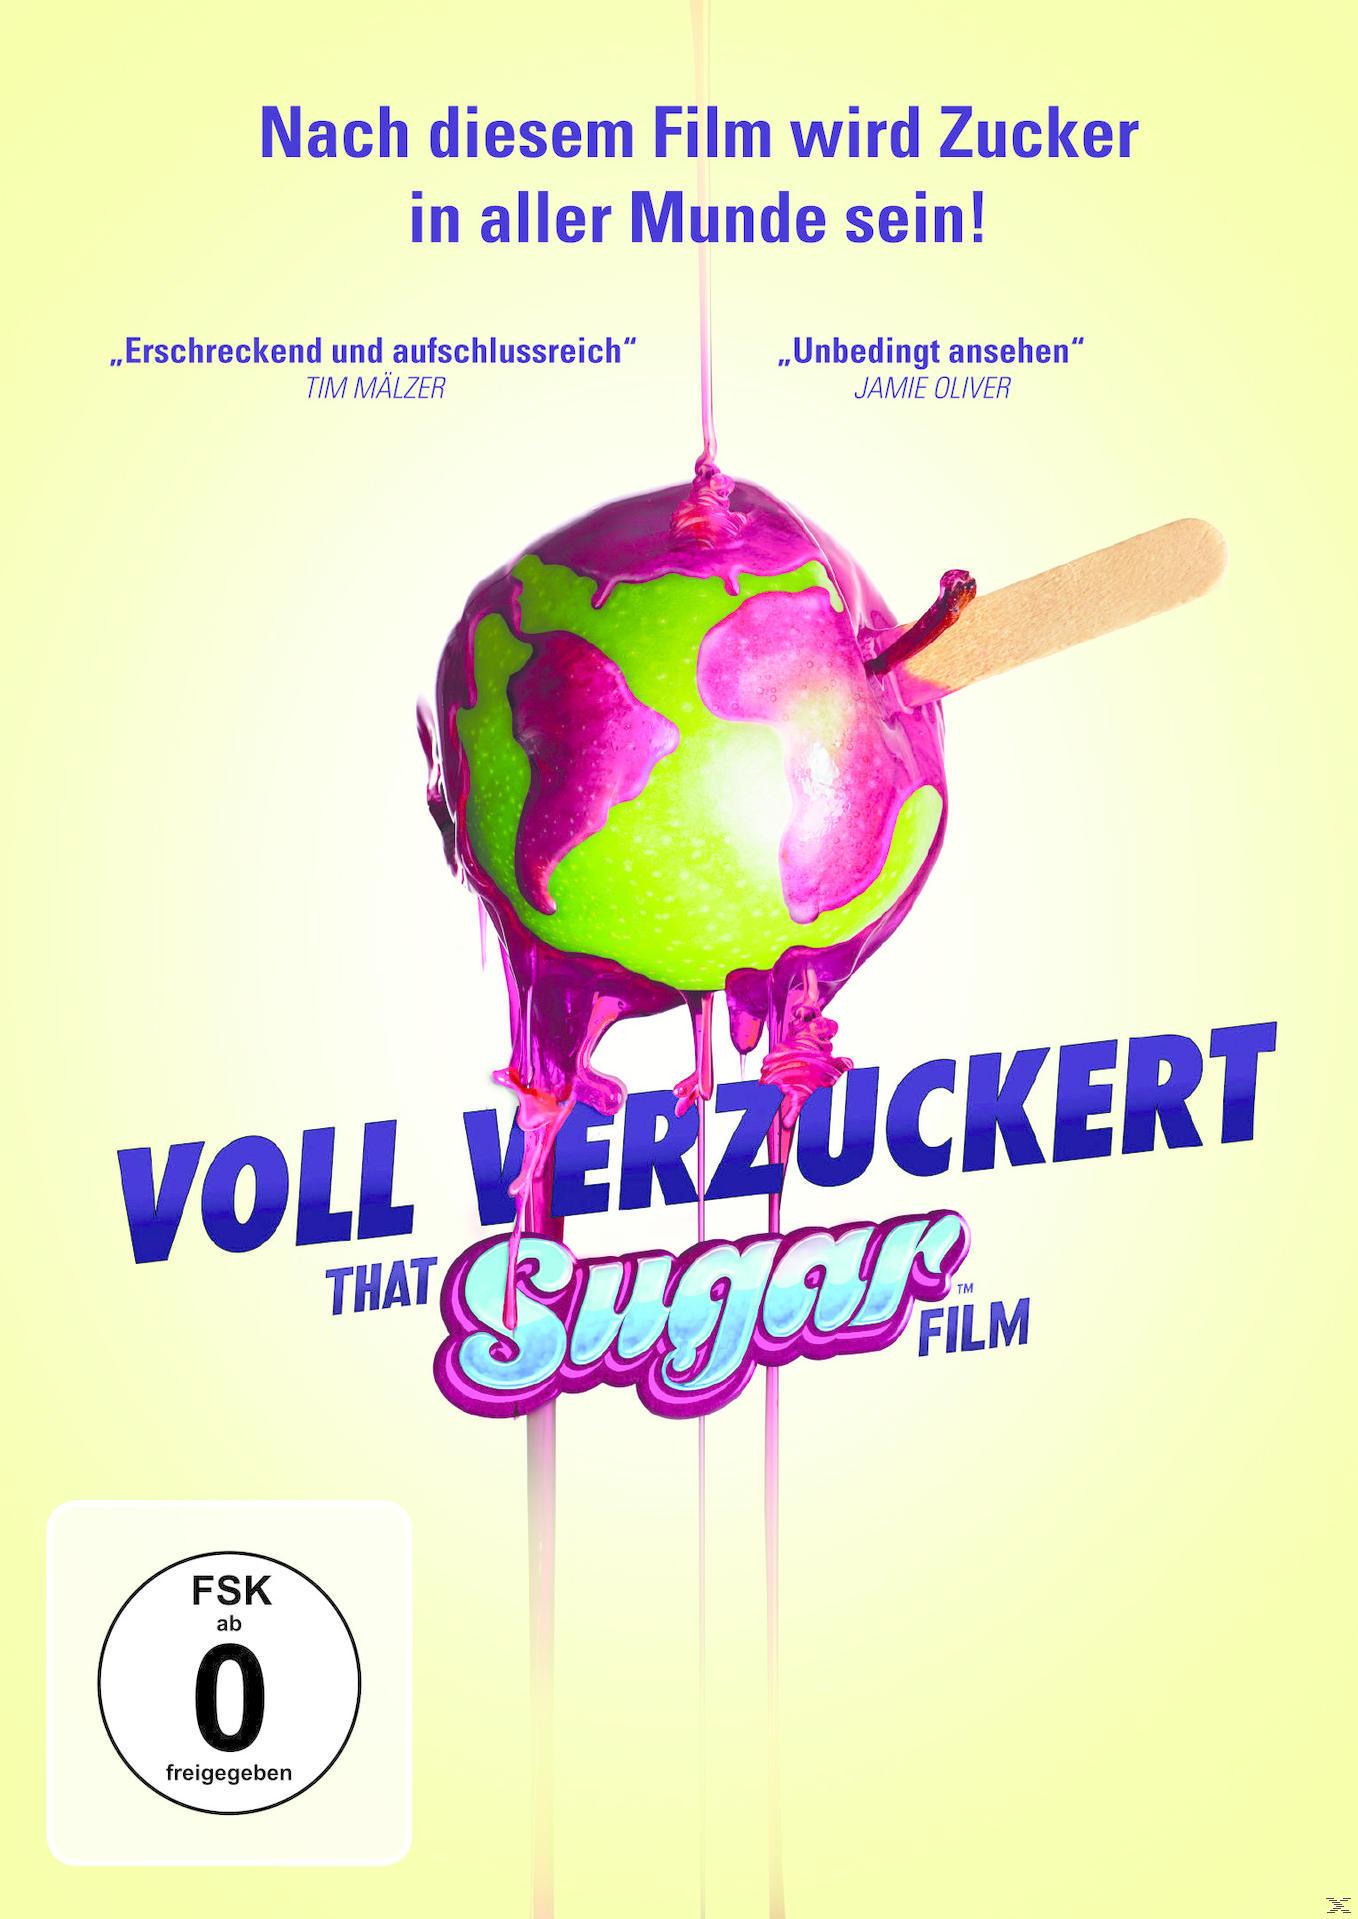 Voll verzuckert - That Film Sugar DVD